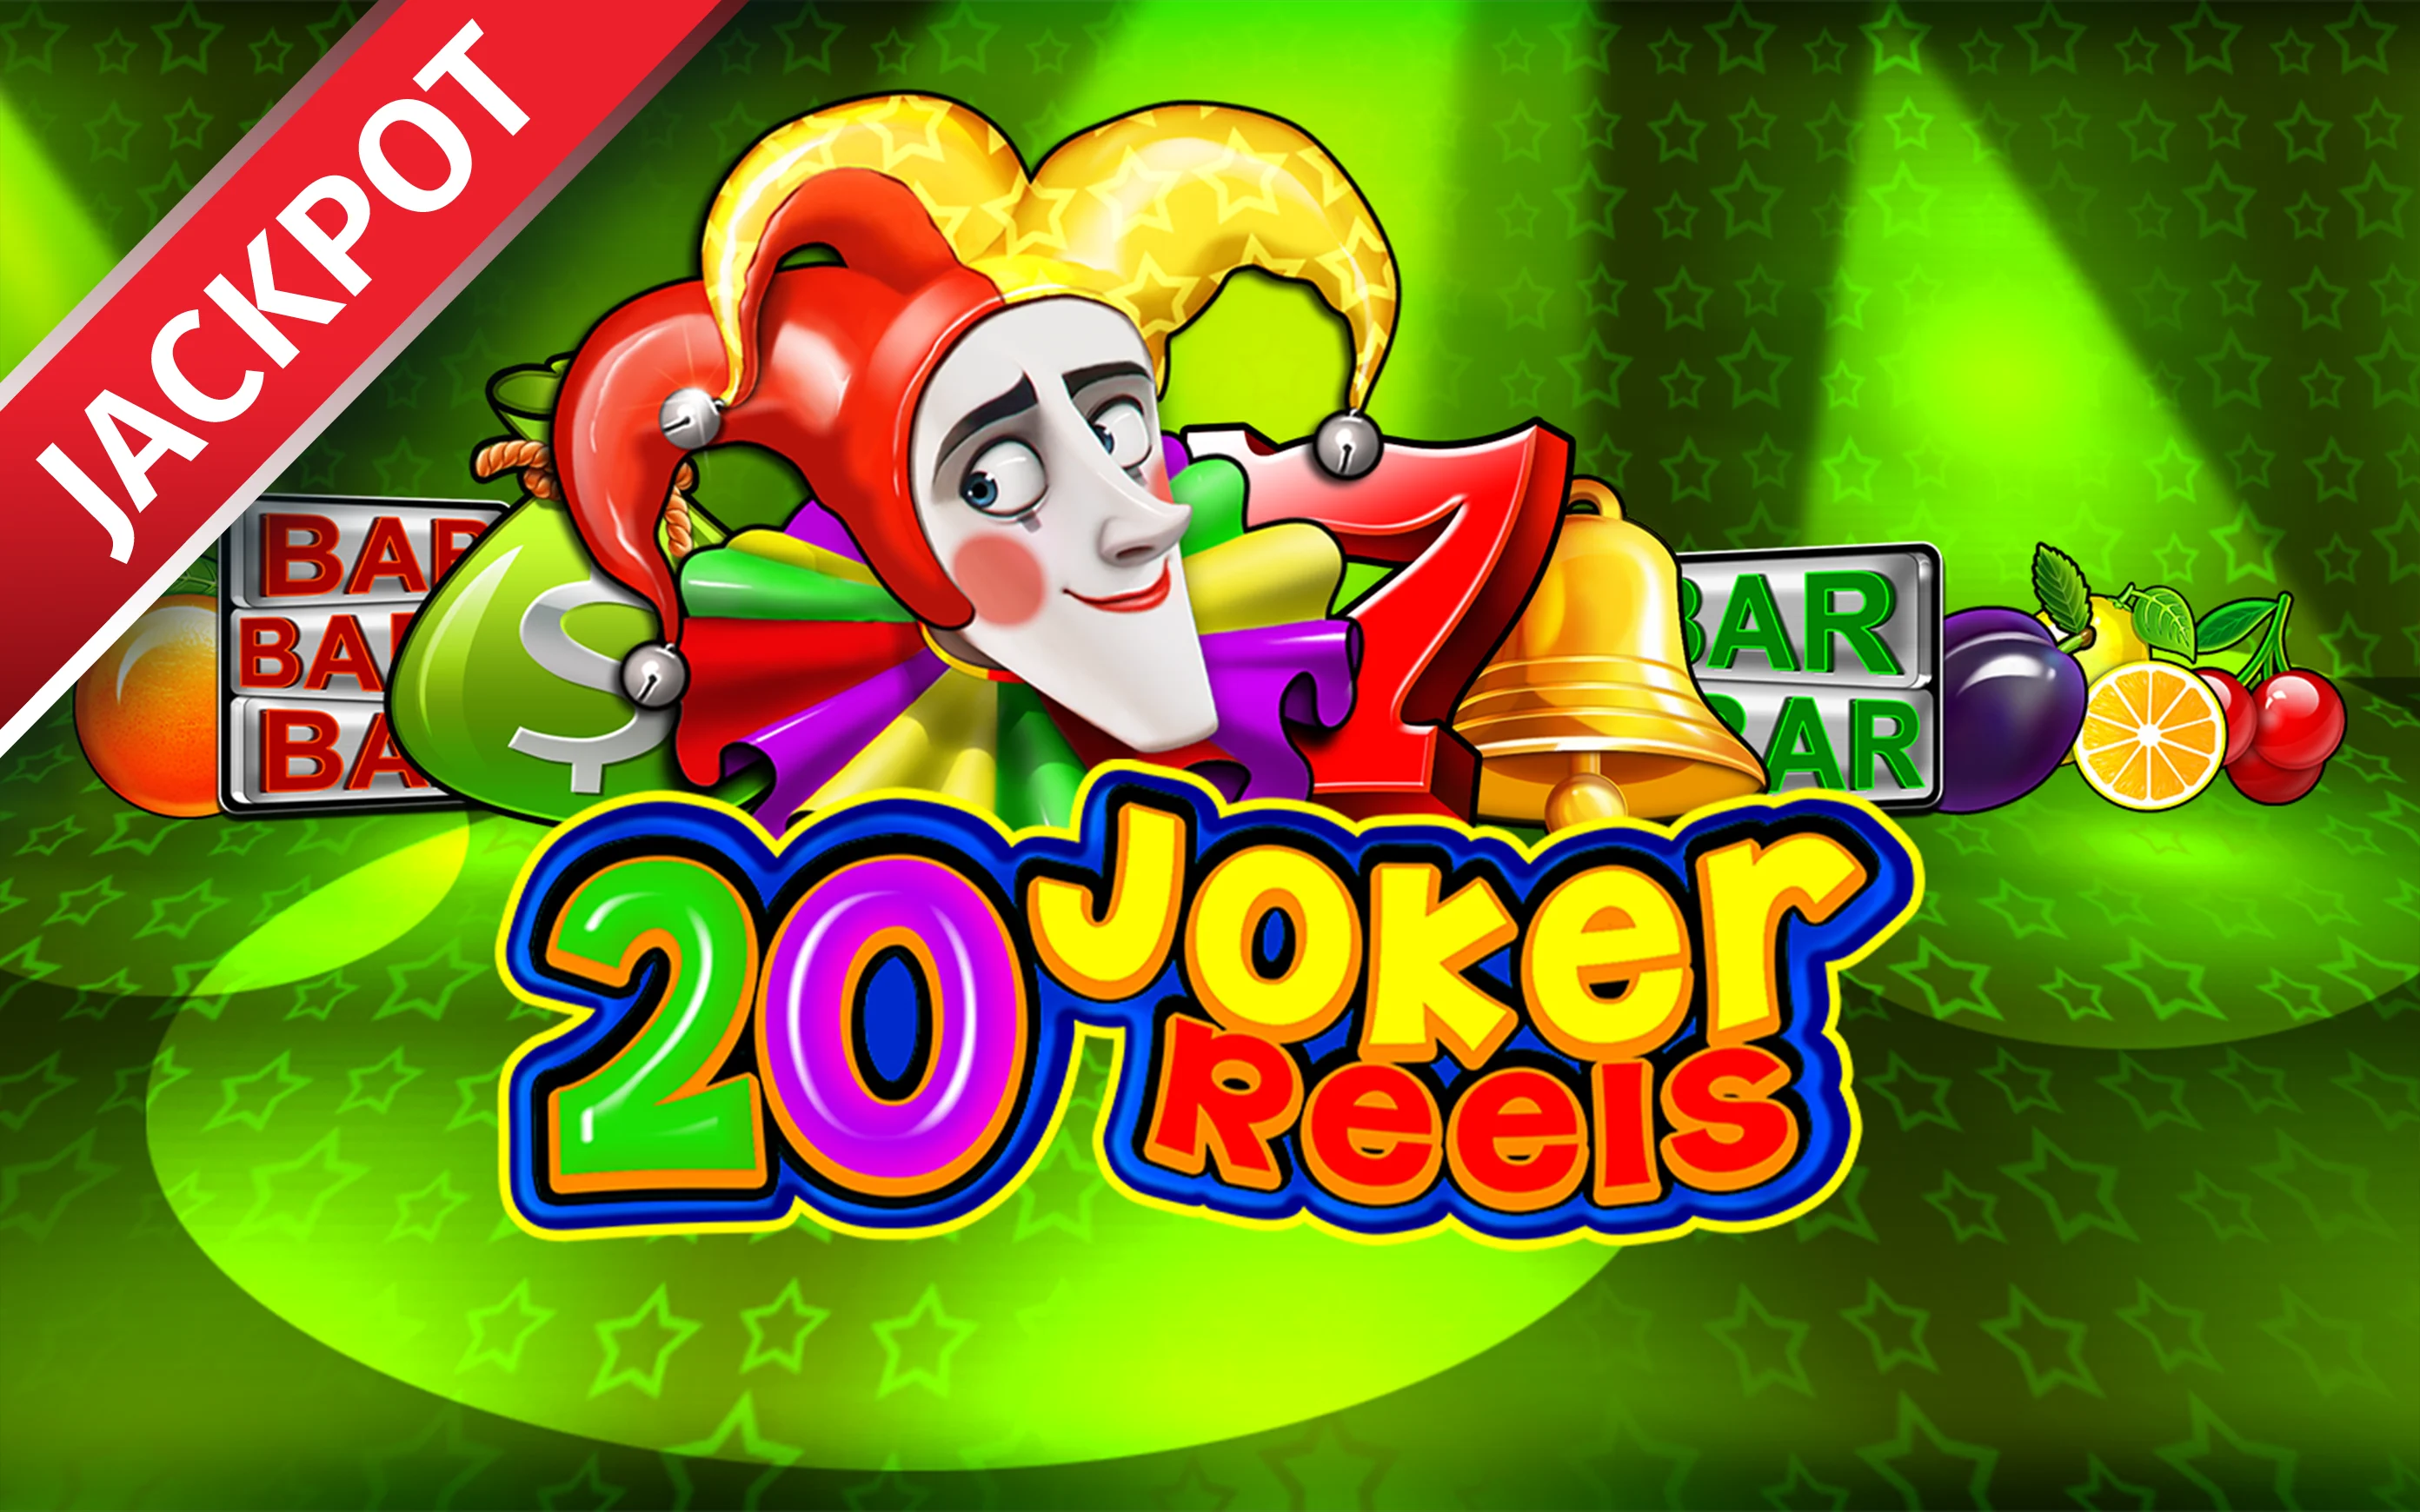 Starcasino.be online casino üzerinden 20 Joker Reels oynayın